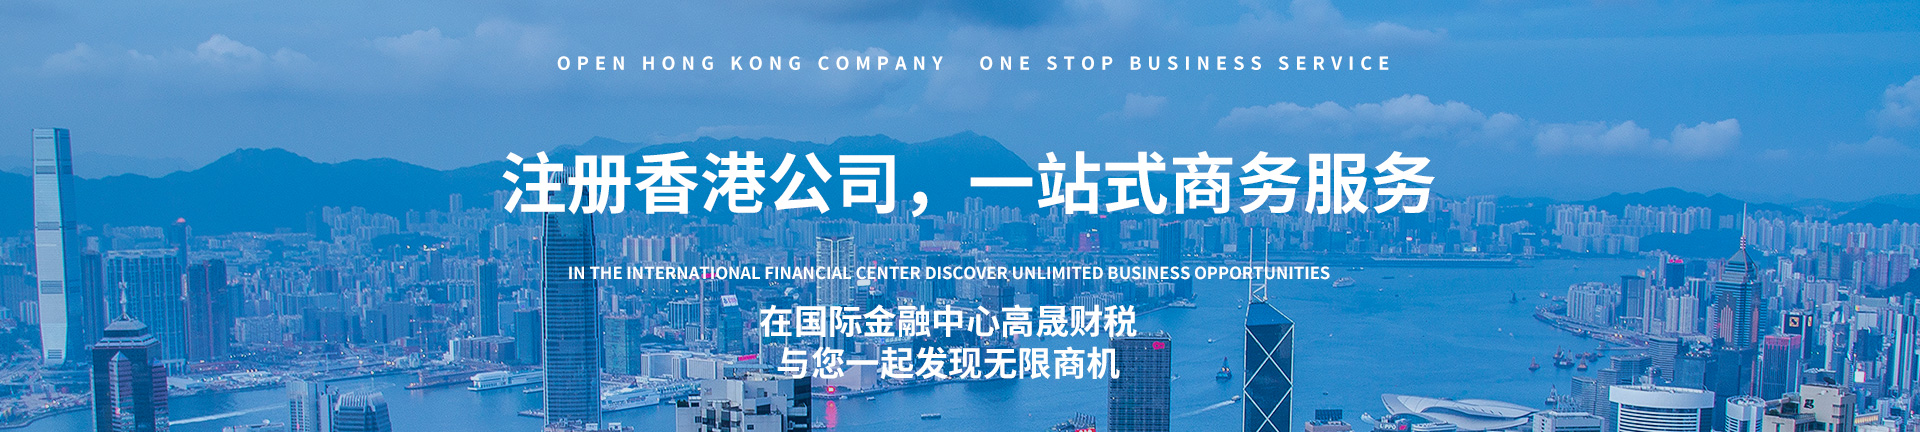 注冊香港公司,一站式商務服務